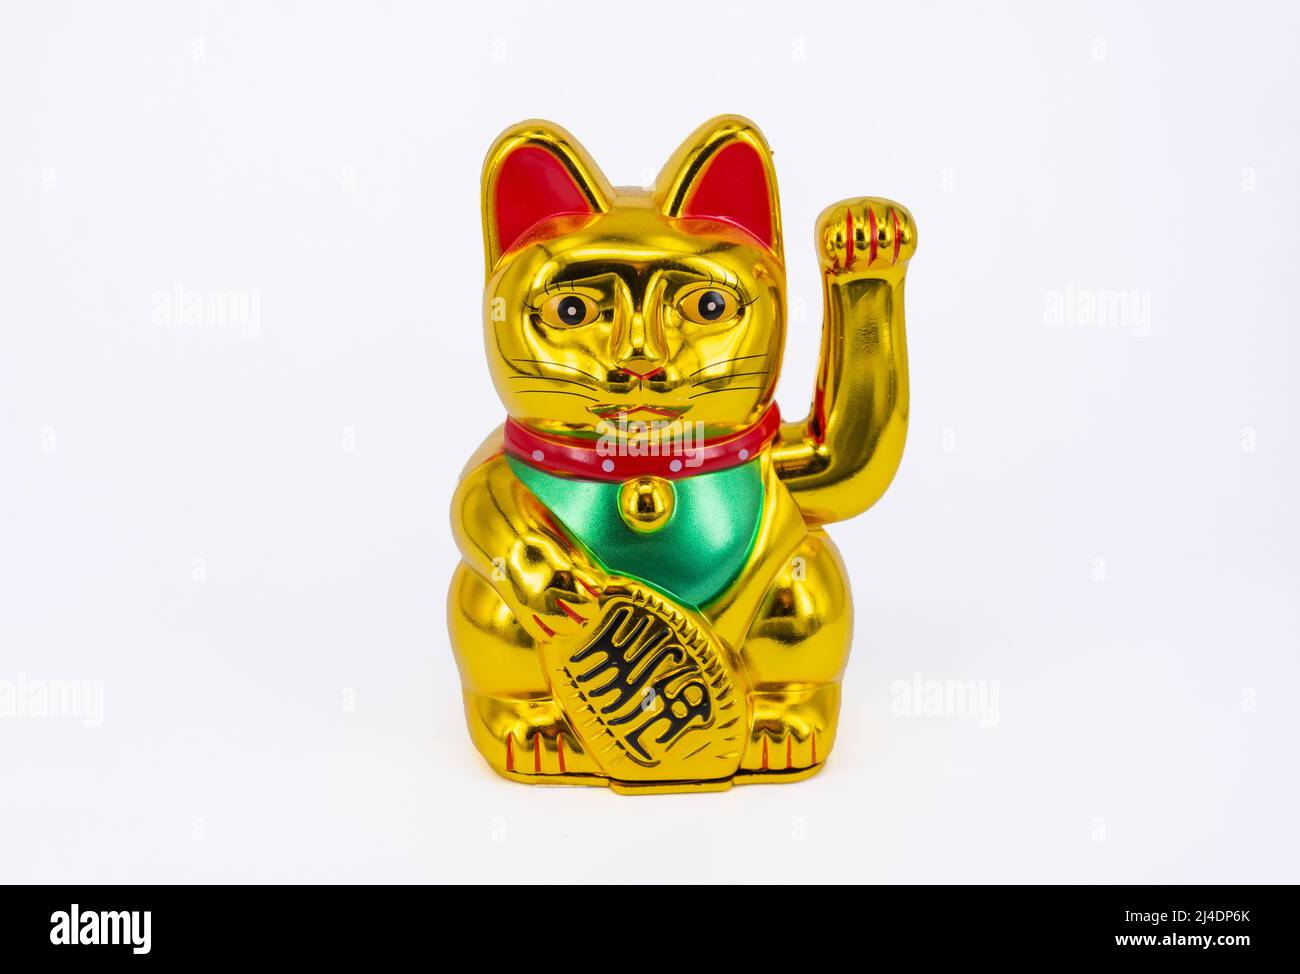 Chinois Lucky agitant le chat à l'attention de Maneki Neko Gold Wealth (nouvel an chinois), Hong Kong, République populaire de Chine Banque D'Images